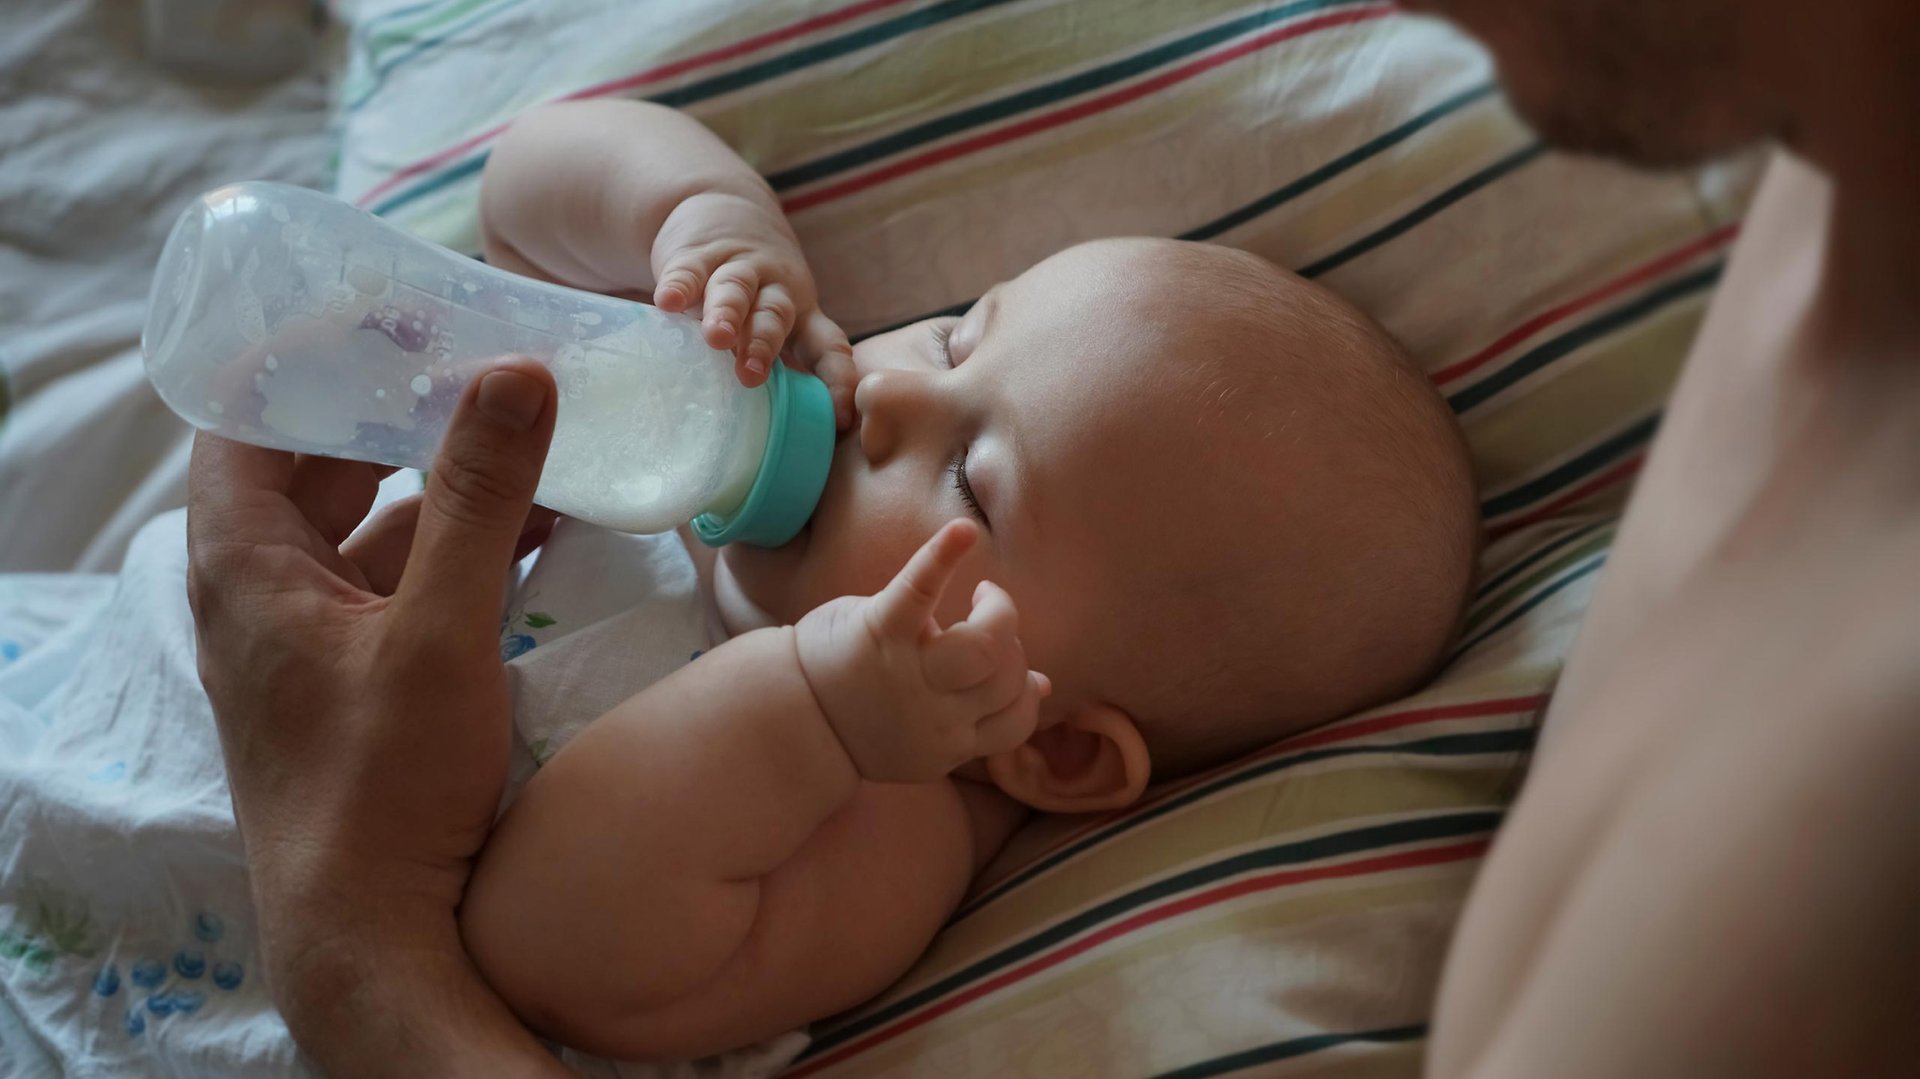 Mama karmi dziecko lezace na poduszce mlekiem z butelki